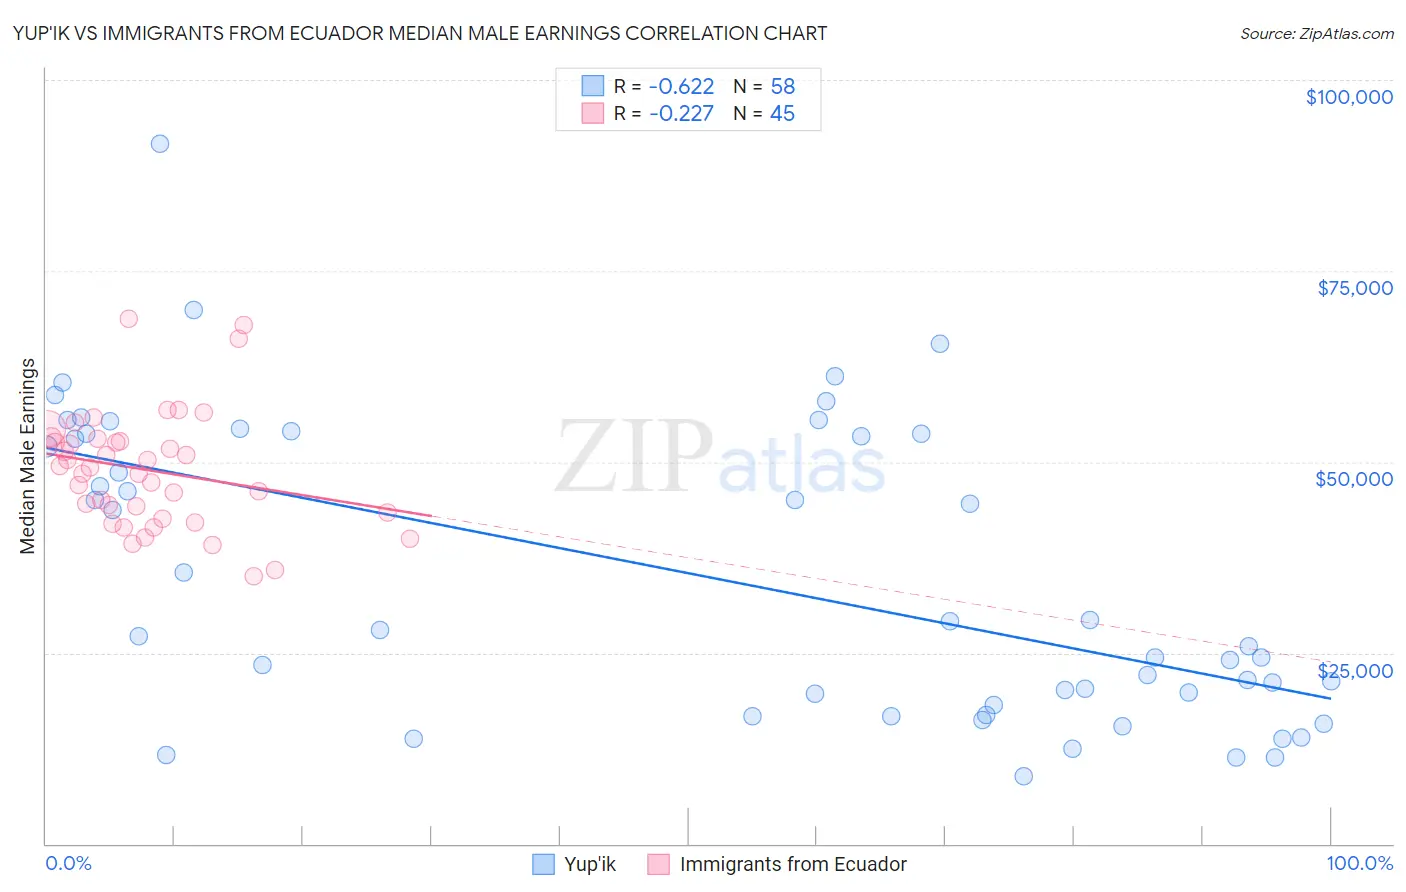 Yup'ik vs Immigrants from Ecuador Median Male Earnings